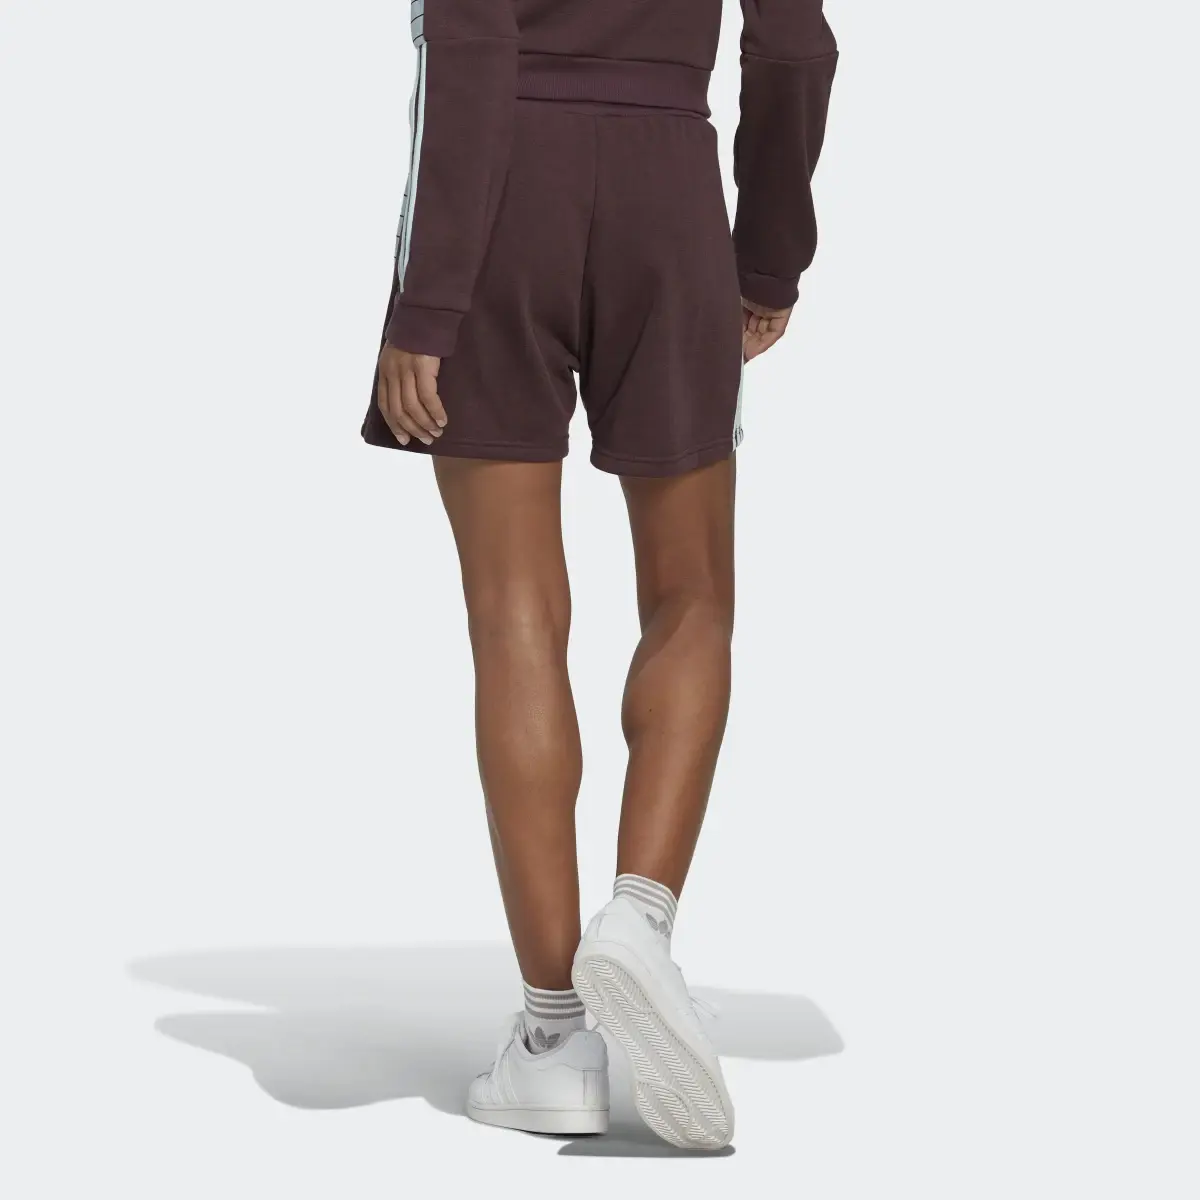 Adidas Tiro Shorts. 2